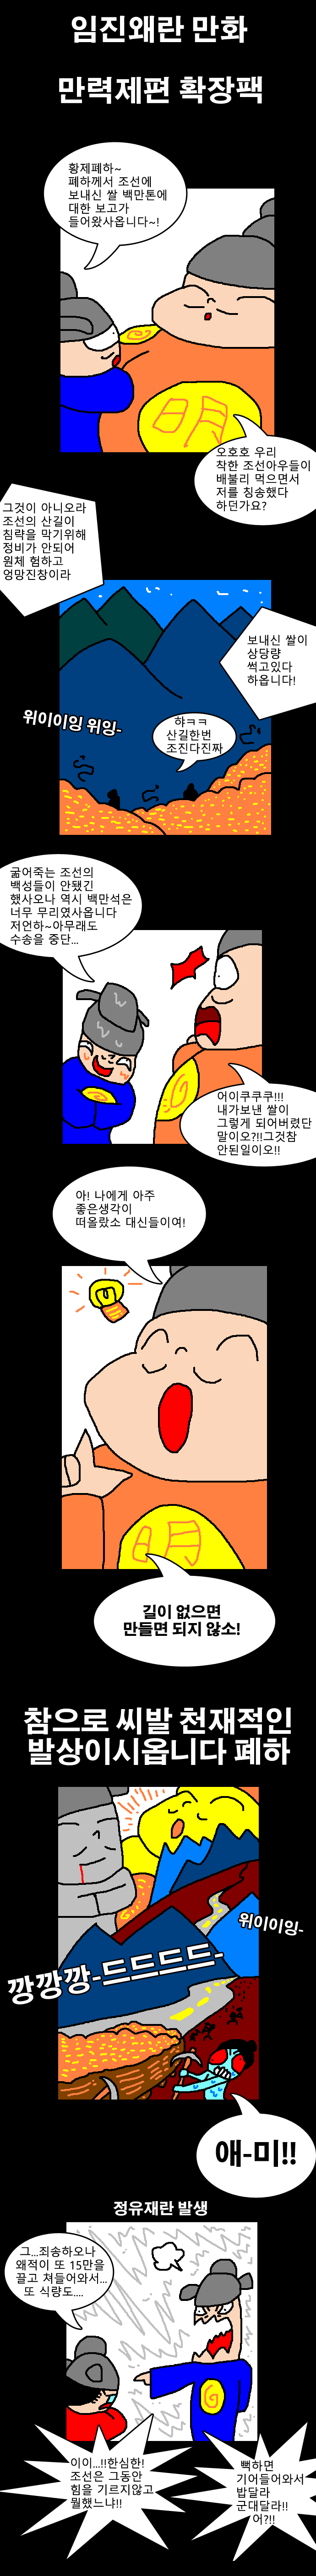 한국인들이 만력제를 좋아하는 이유